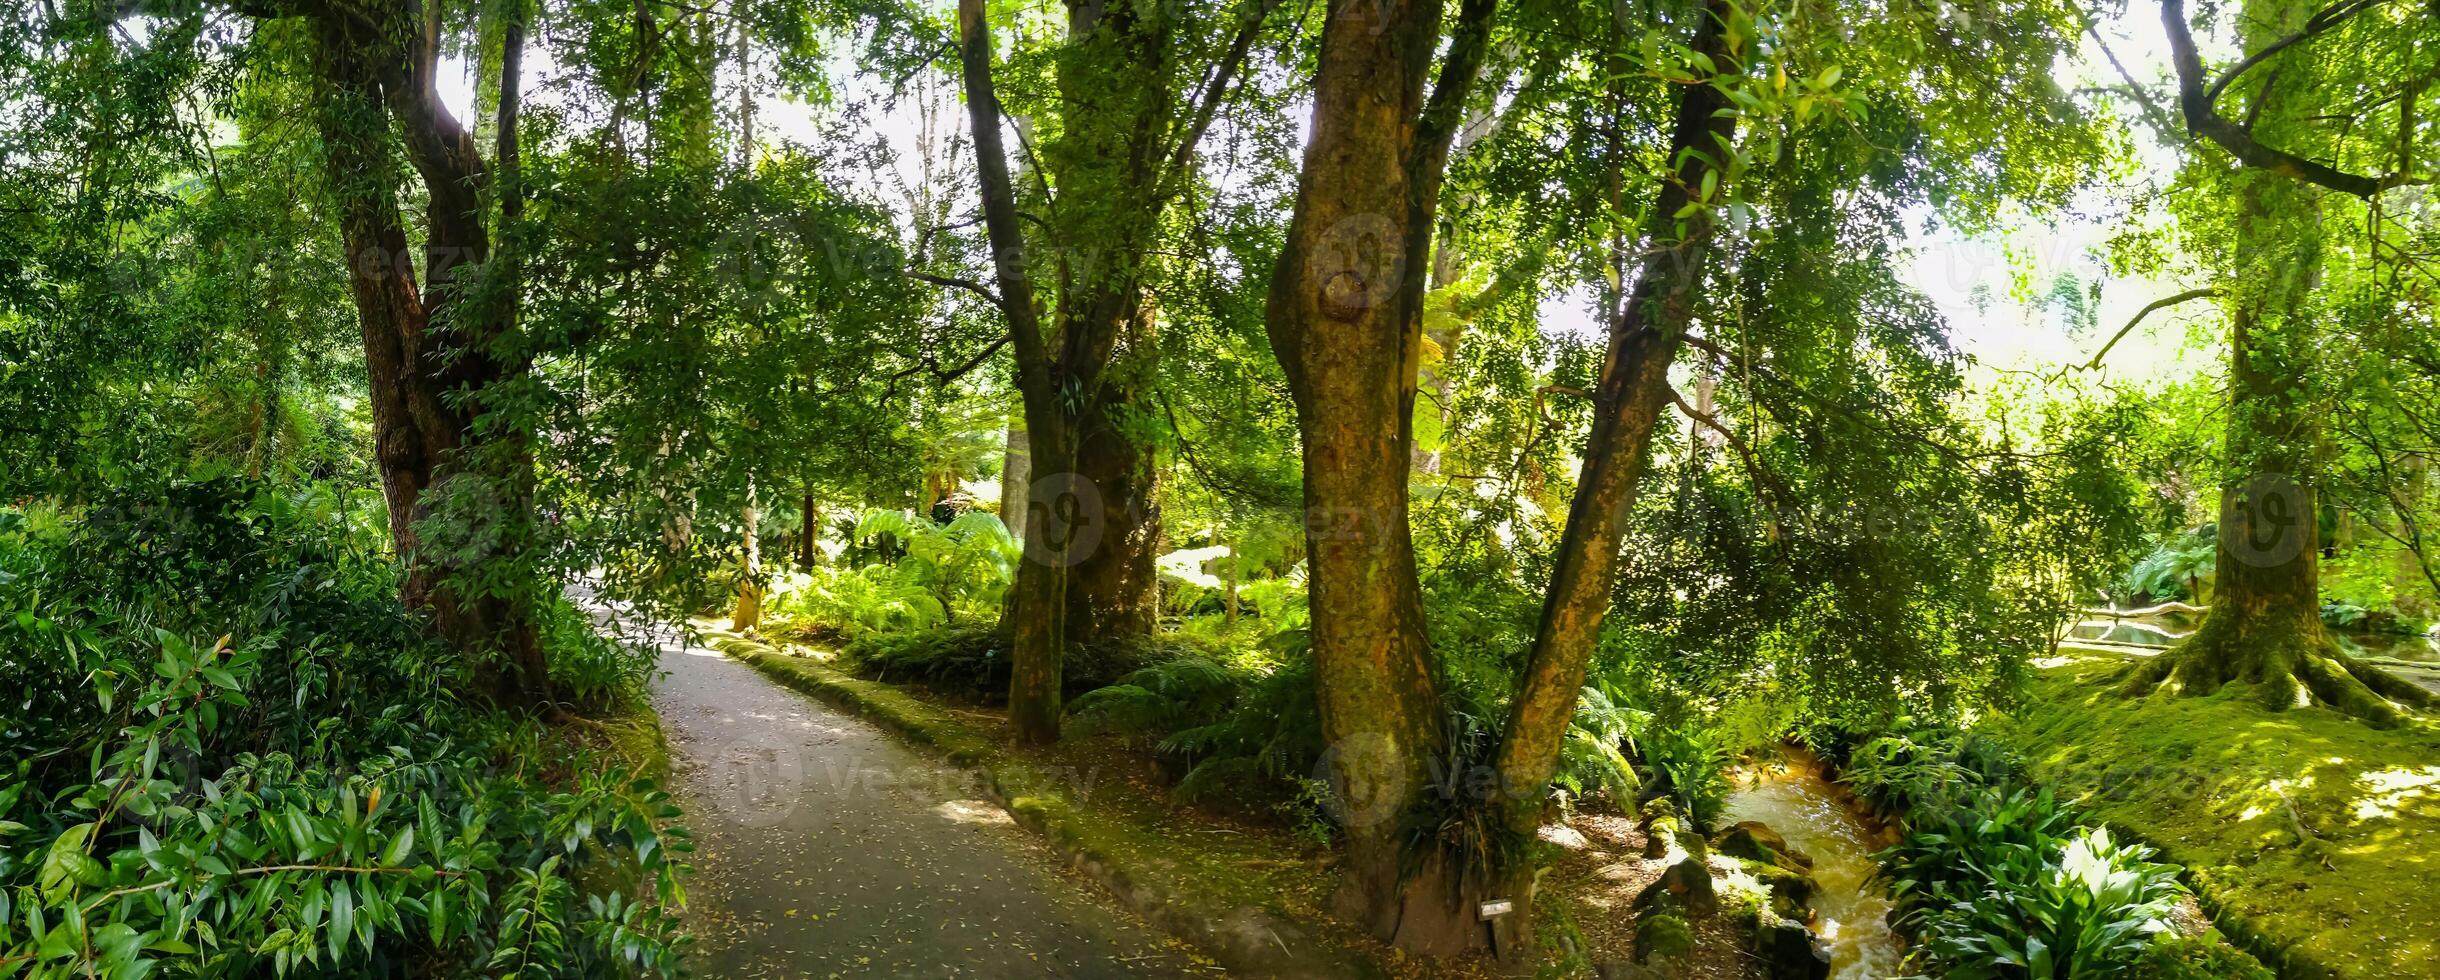 terra nostra parque dentro a Açores é uma ampla botânico jardim com uma enorme variedade do plantas e árvores e com lagos, córregos e uma piscina do vulcânico origem foto